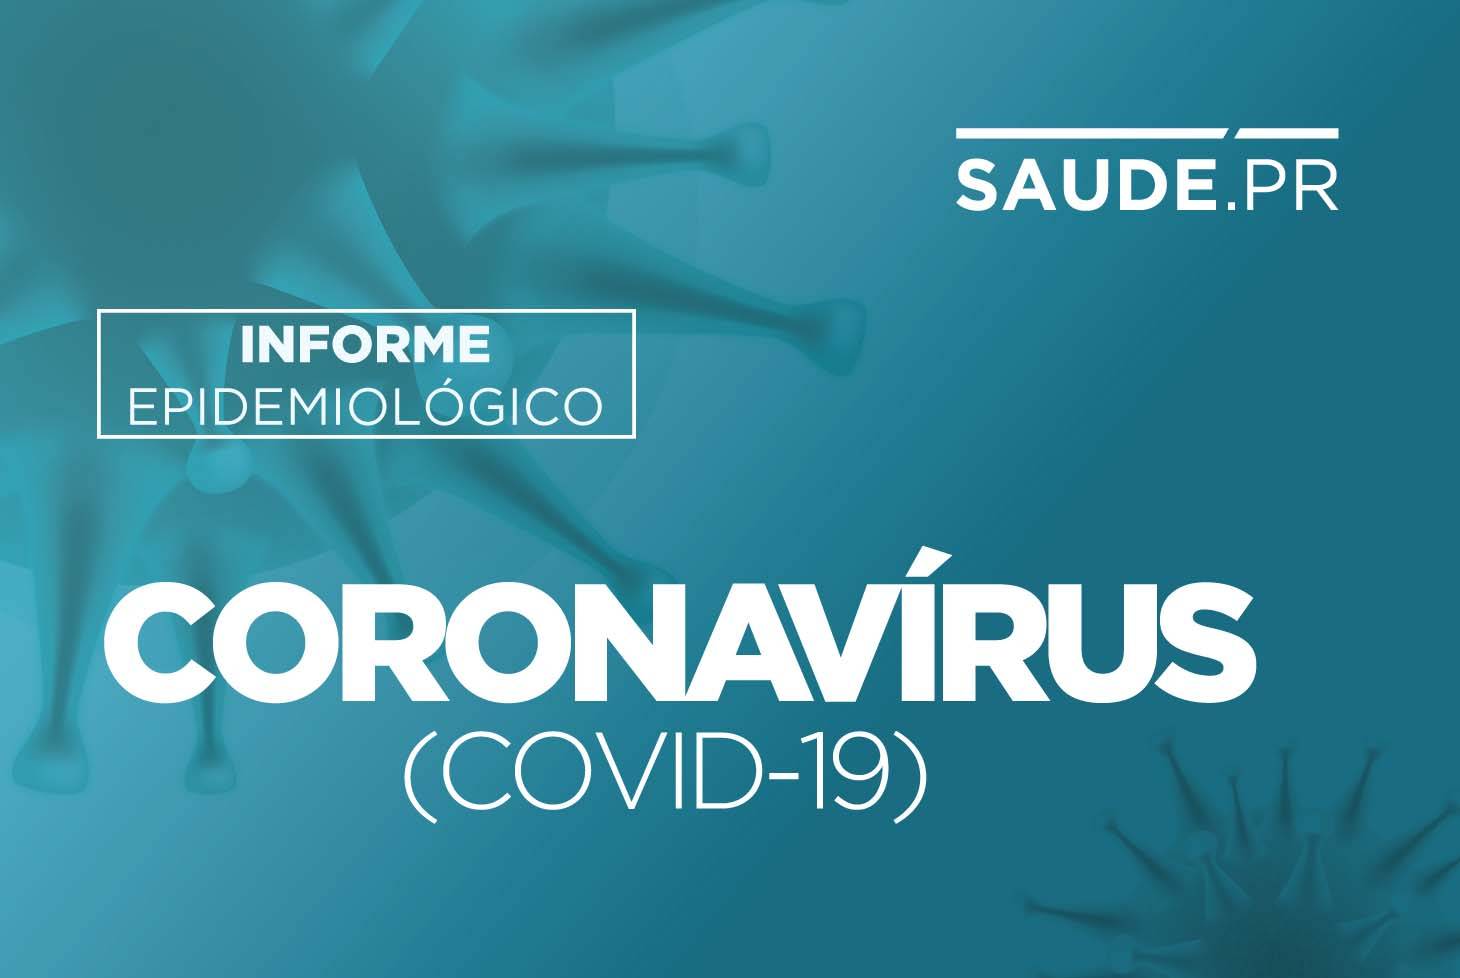 Paraná registra 6.253 novos casos de Covid-19. Paraná aplicou 364.633 doses da vacina